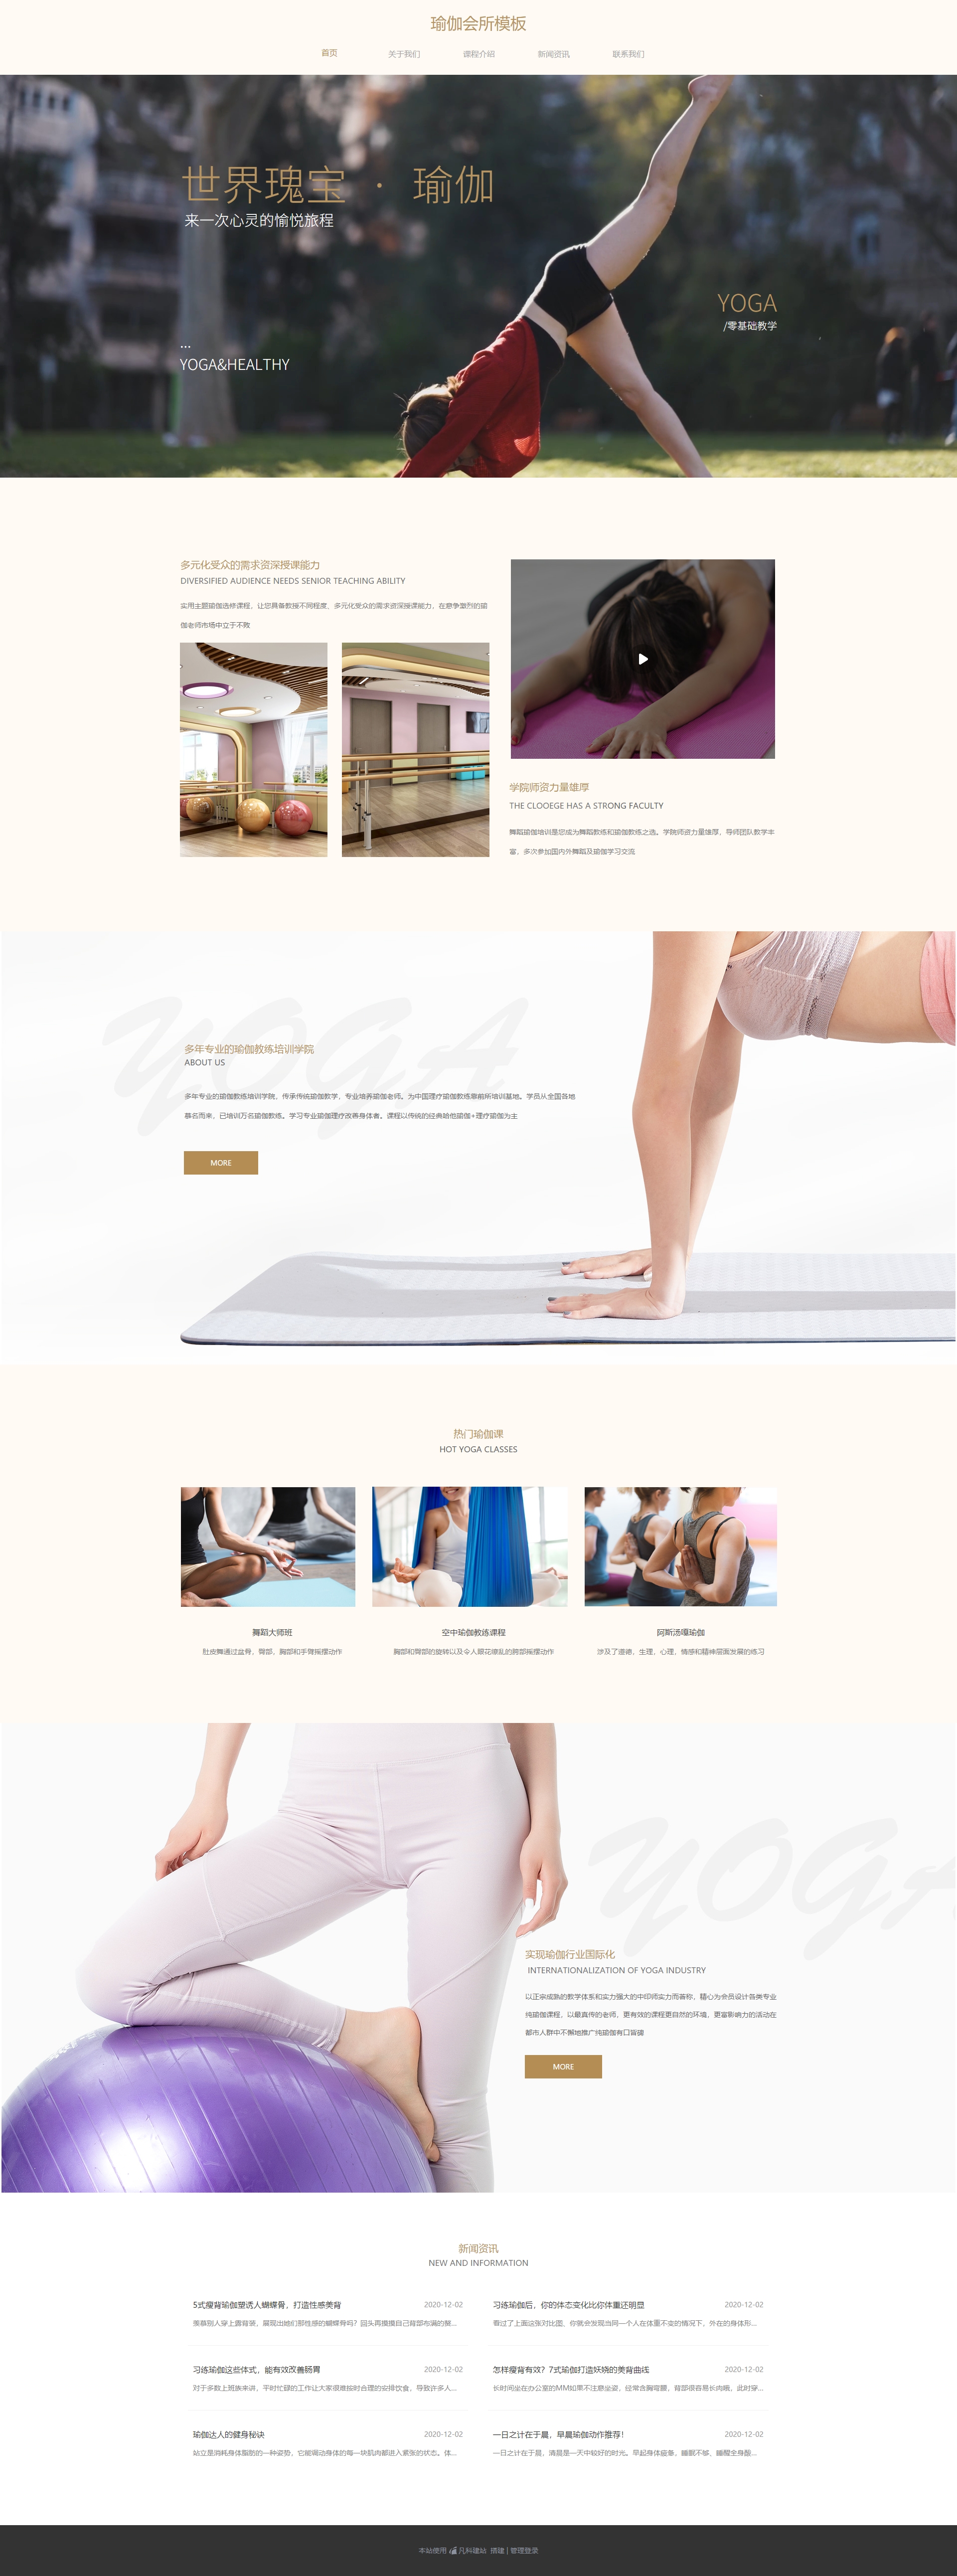 个性瑜伽健身俱乐部网页模板